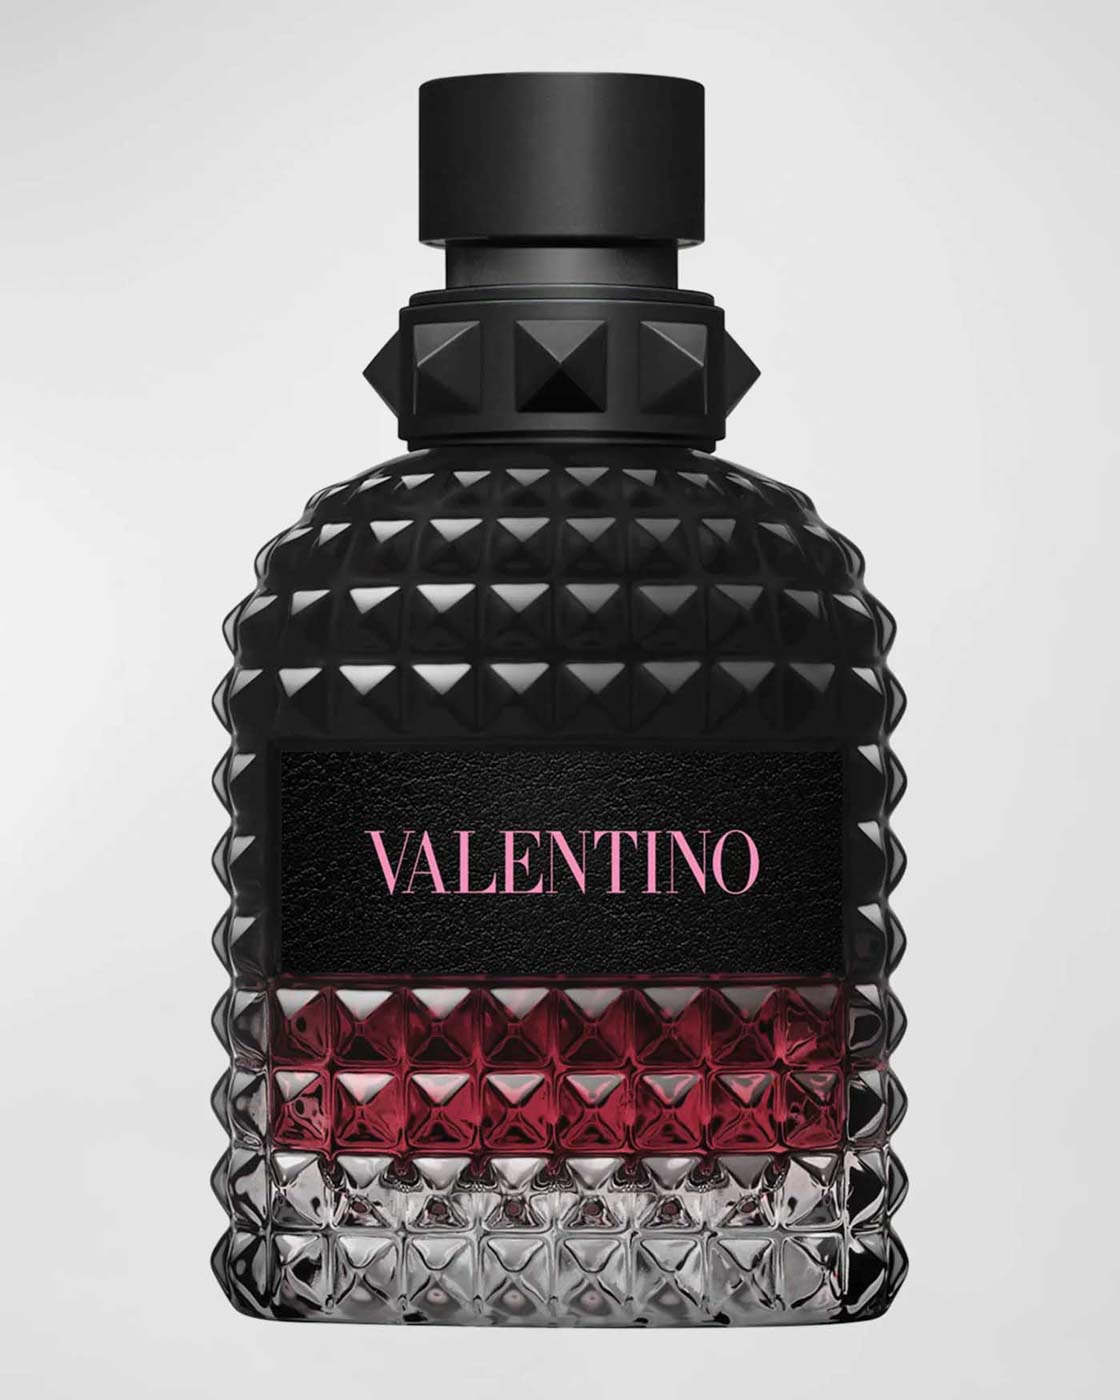 48 Valentino Men's Uomo Born In Roma Intense Eau De Parfum, 3.4 Oz. $128 Available At Neiman Marcus